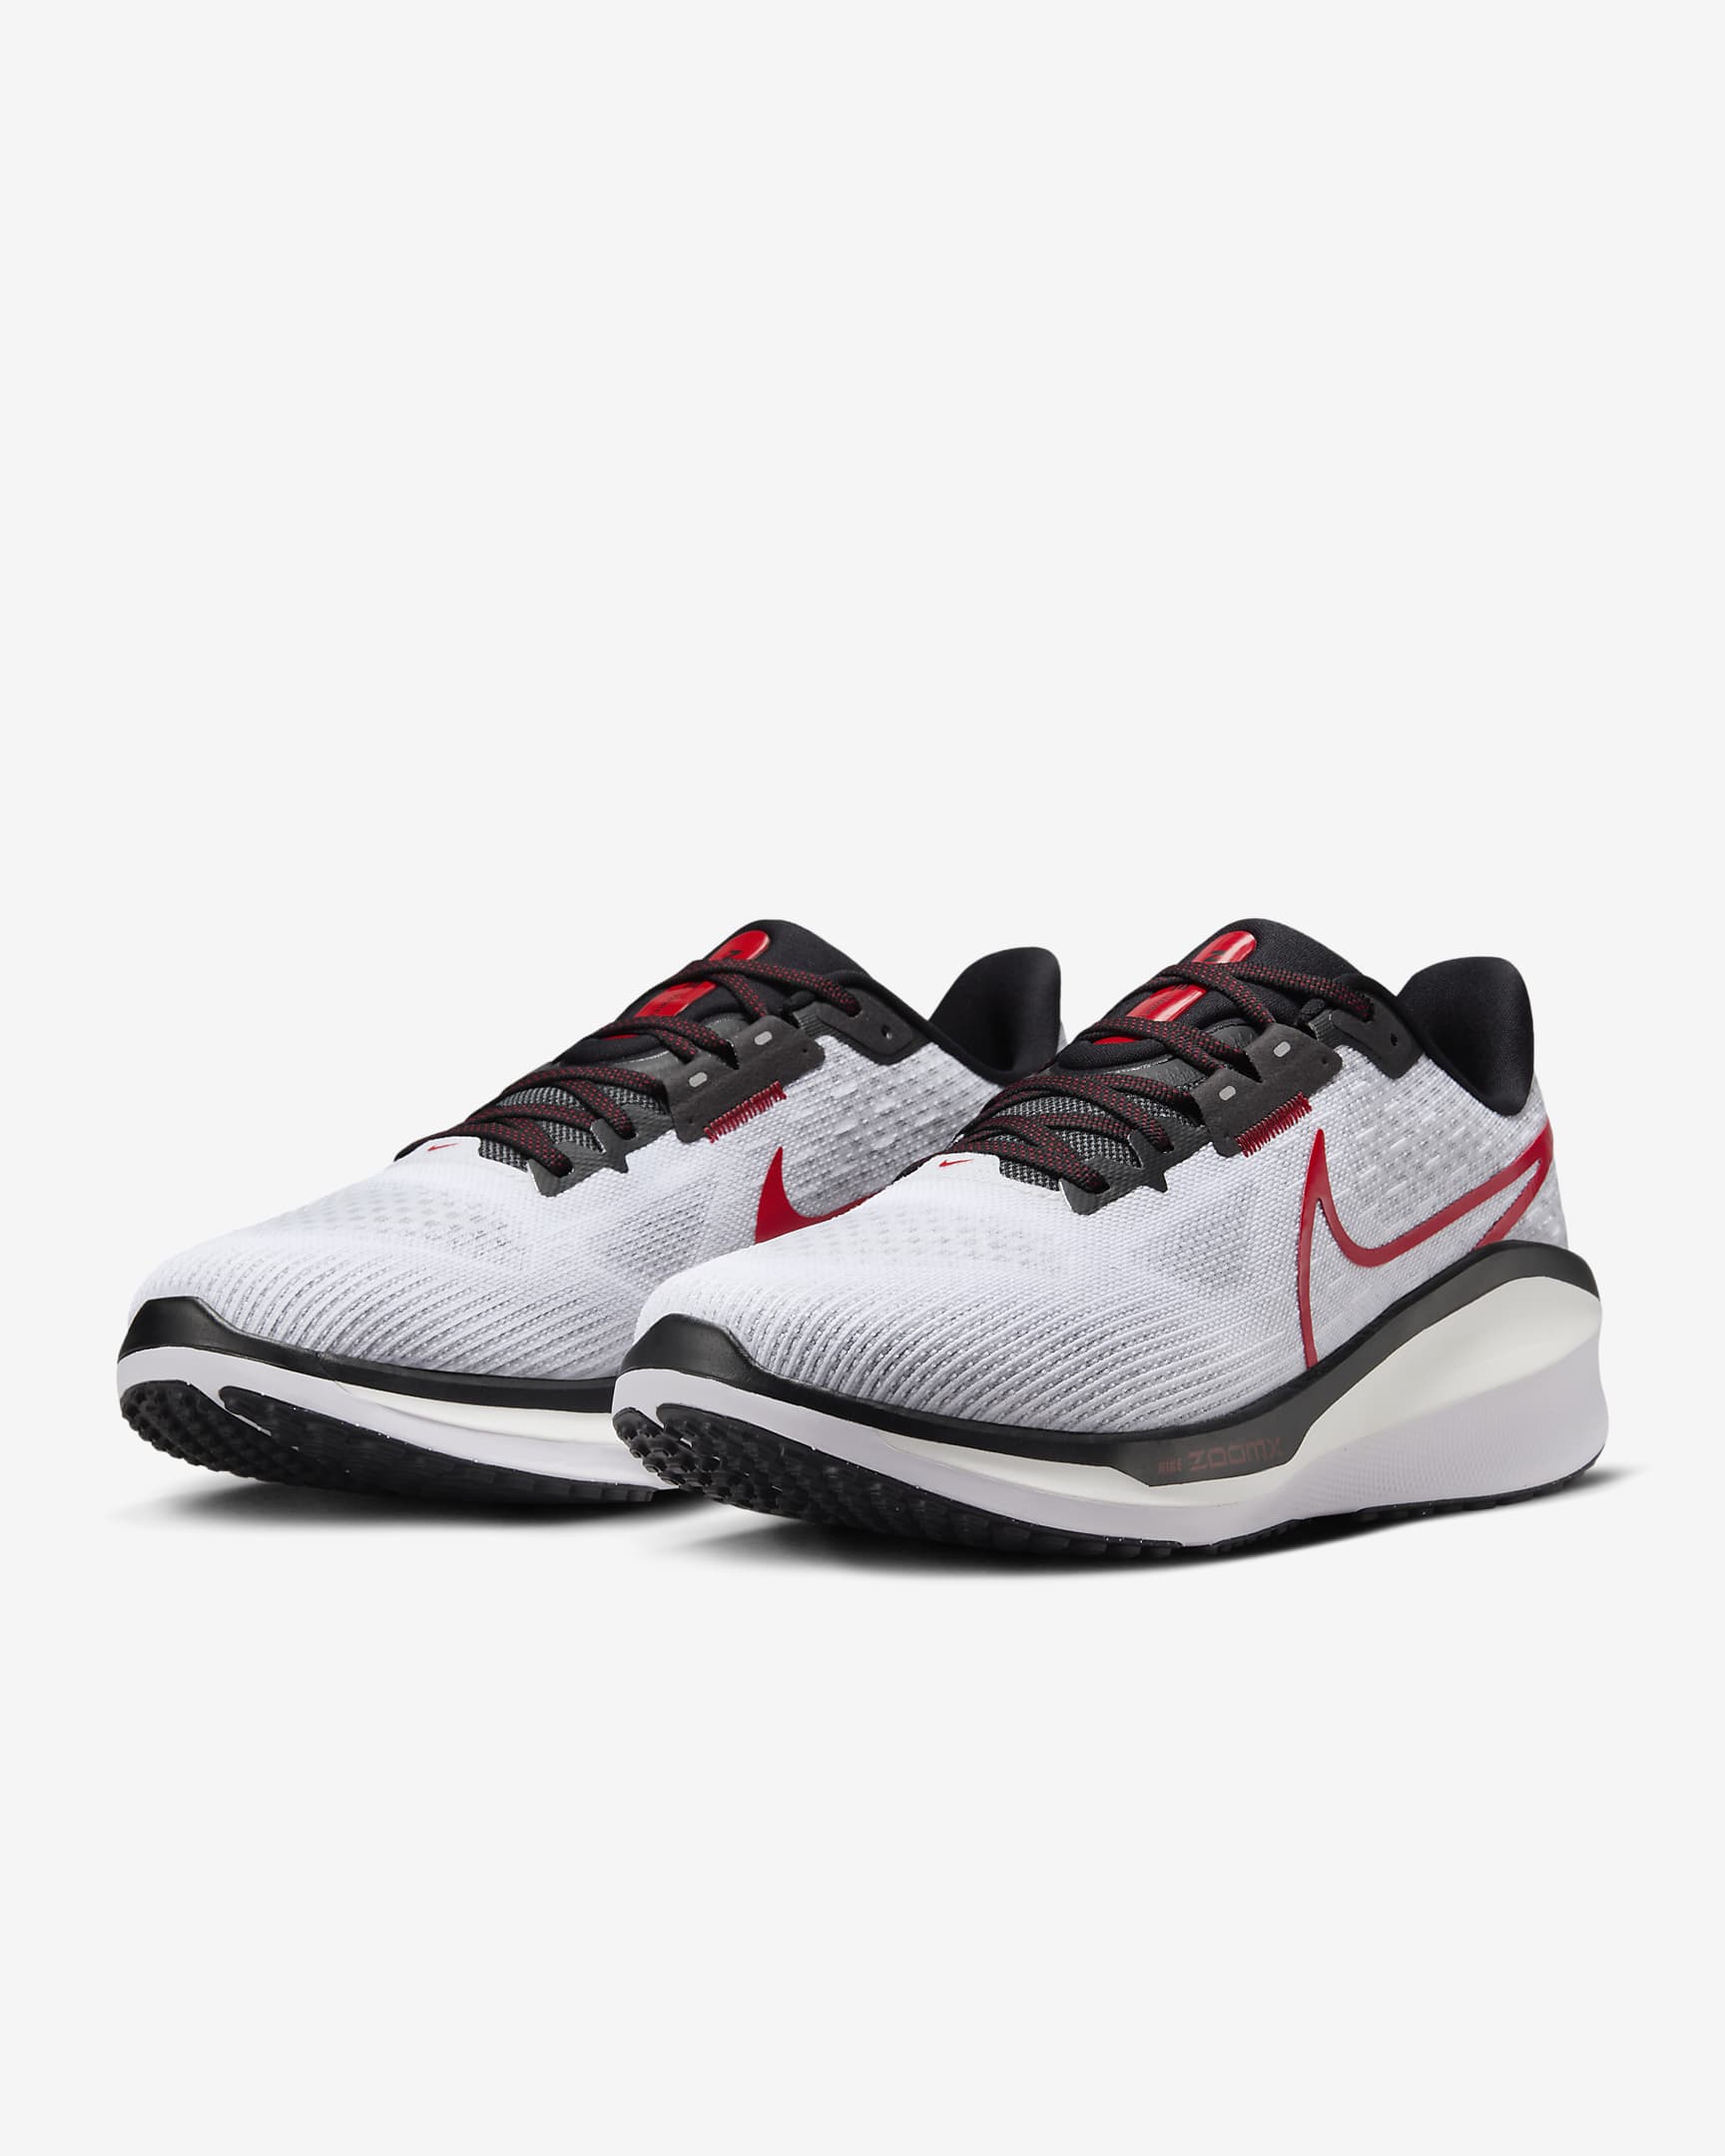 Nike Vomero 17 Zapatillas de running para asfalto - Hombre - Blanco/Fire Red/Platinum Tint/Negro